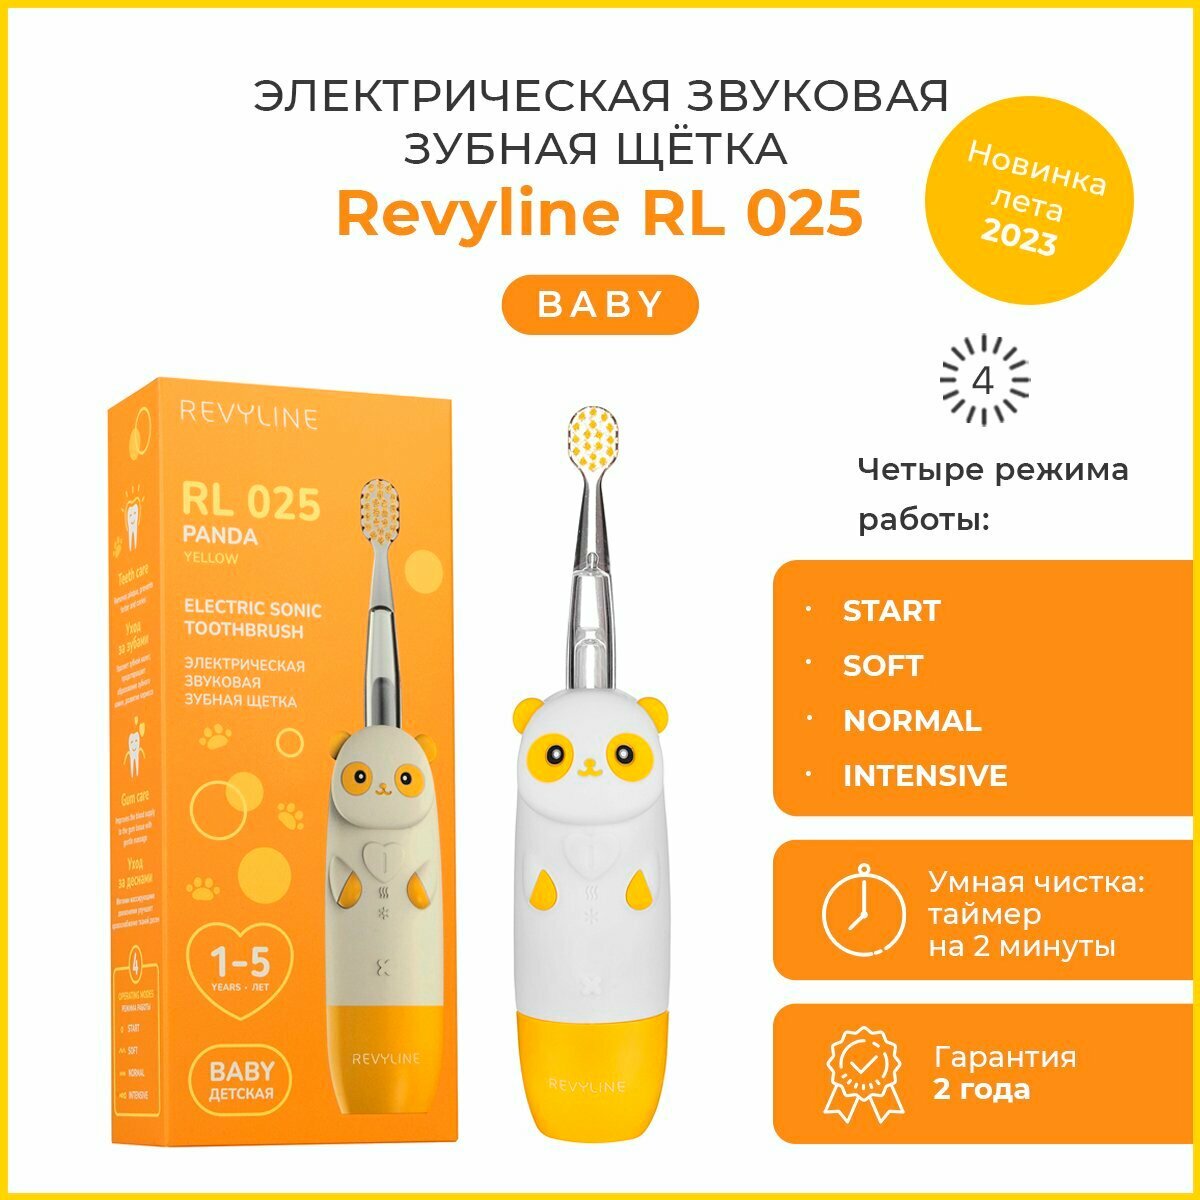 Детская электрическая зубная щётка Revyline RL 025 Panda, желтая, от 1-5 лет, Ревилайн